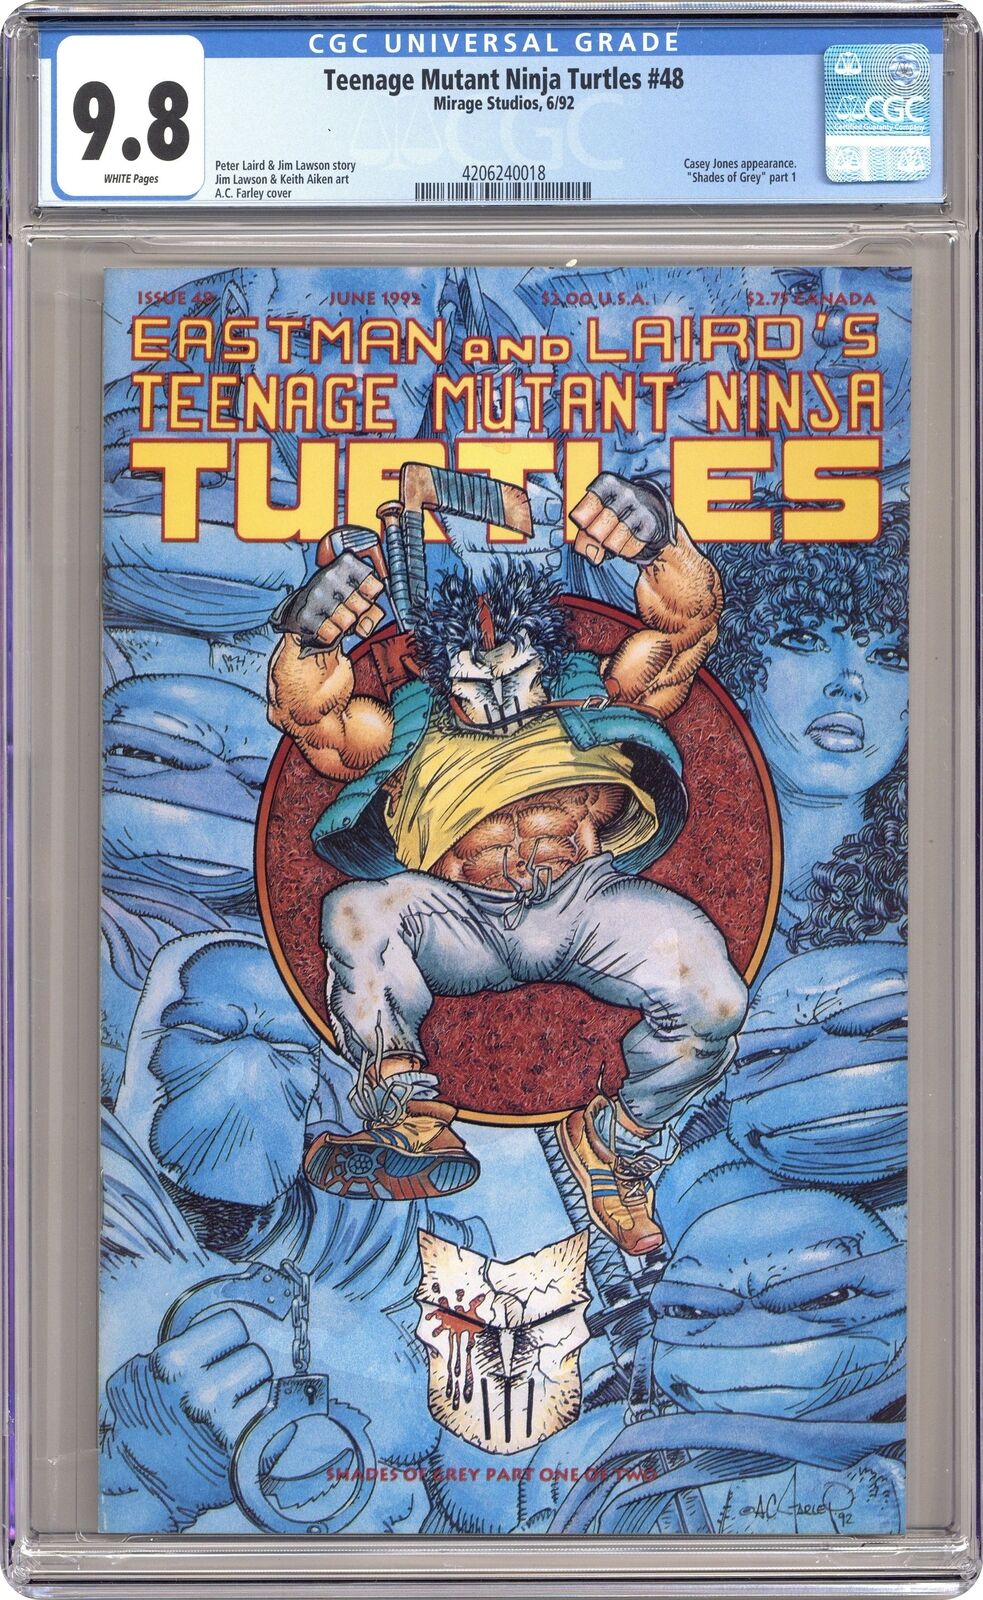 Teenage Mutant Ninja Turtles #48 CGC 9.8 1992 4206240018